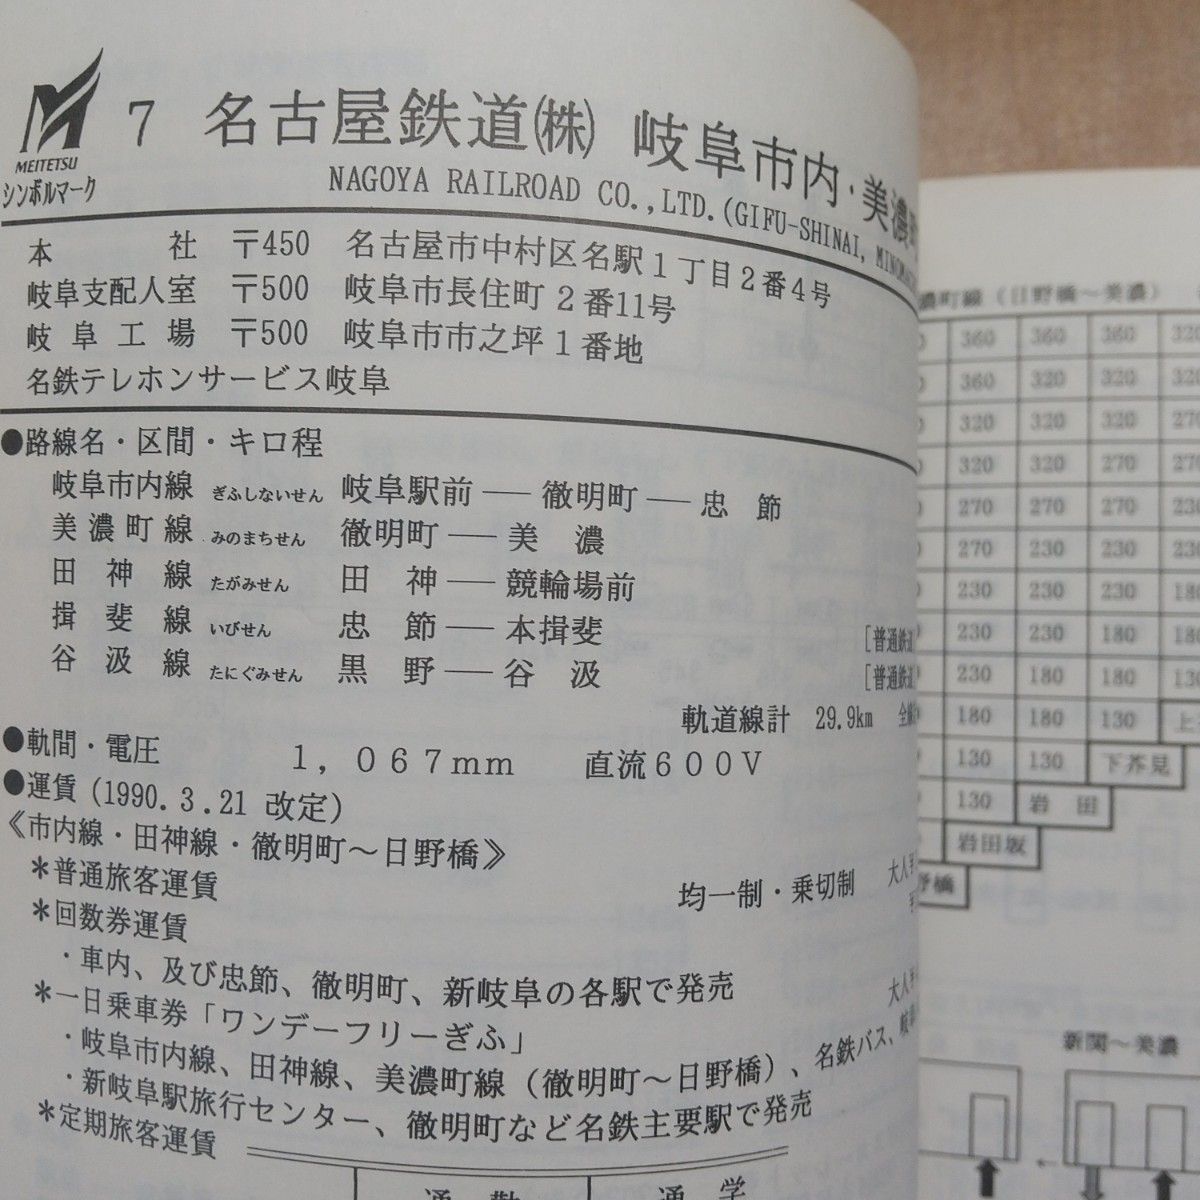 日本路面電車同好会「日本の路面電車ハンドブック」1993年版 A5判128ページ